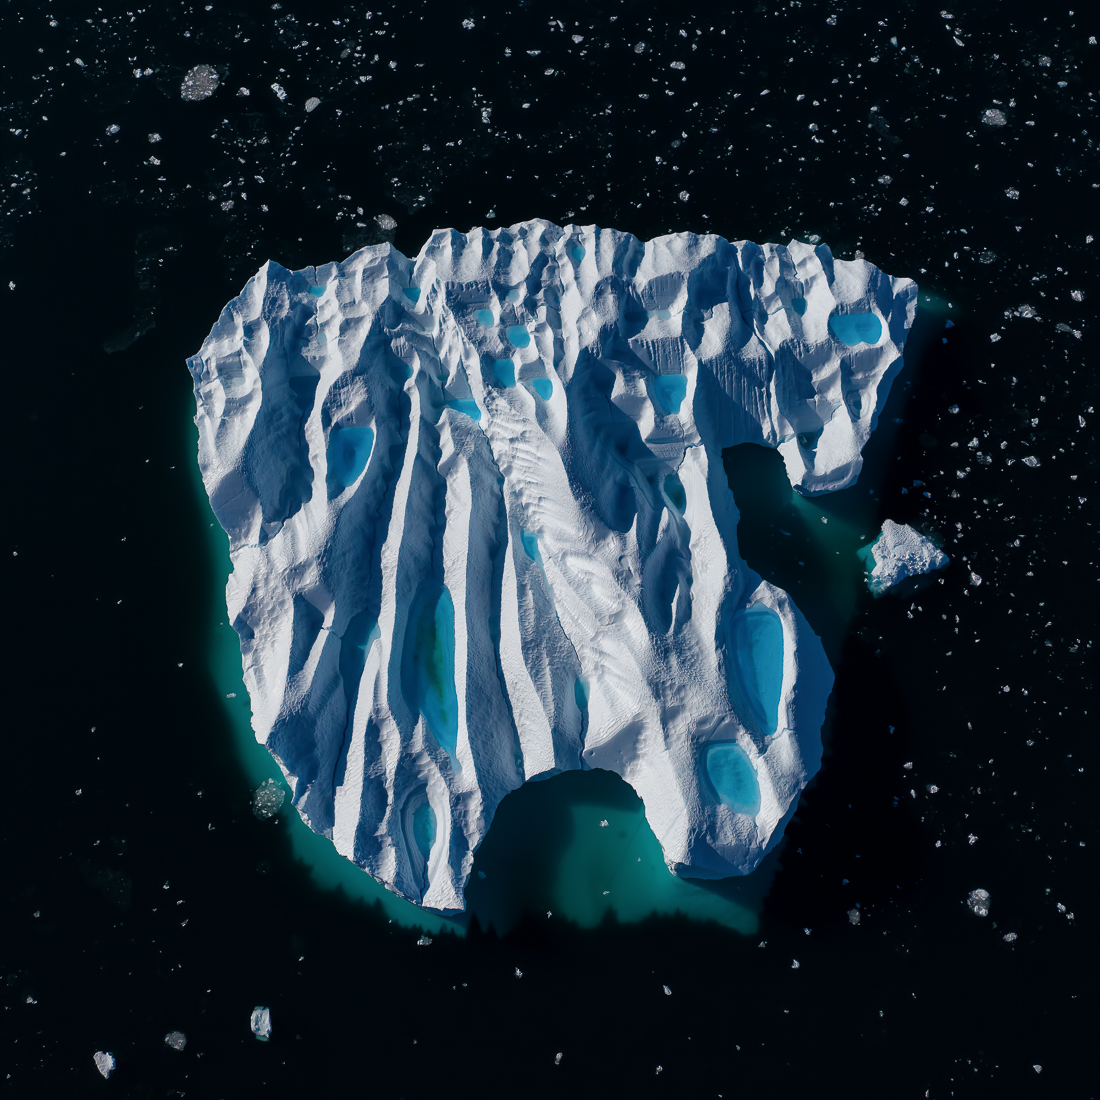 Asteroid or Iceberg